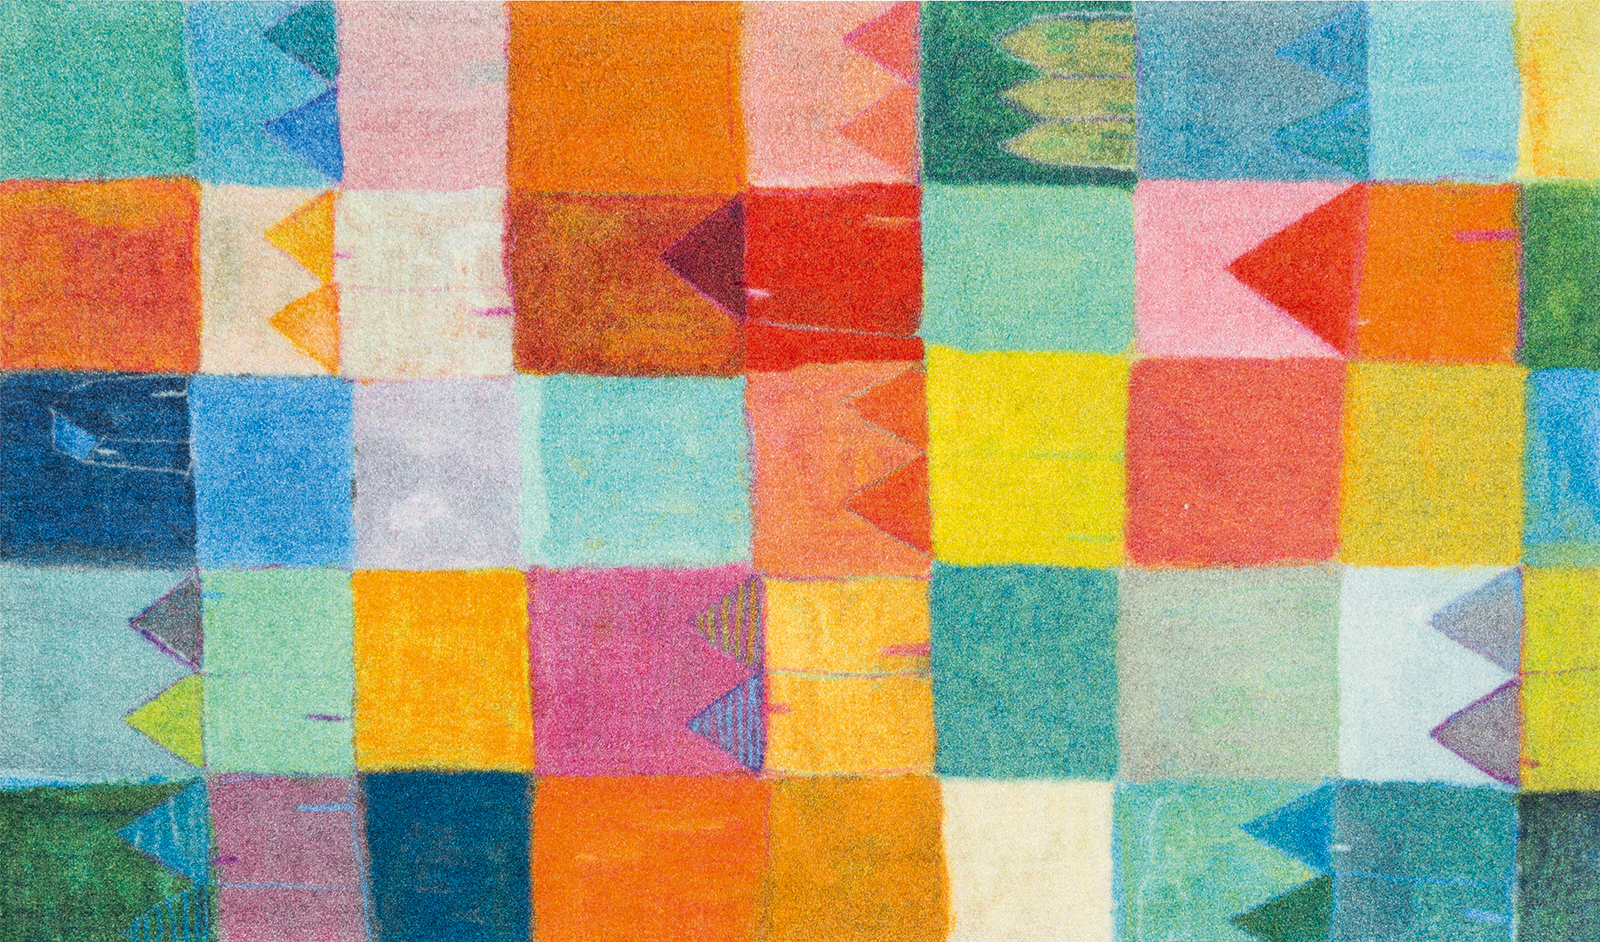 Sauberlaufmatte Sonnenstadt, fröhliches Design, mehrfarbig bunt, 070 x 120 cm, Draufsicht